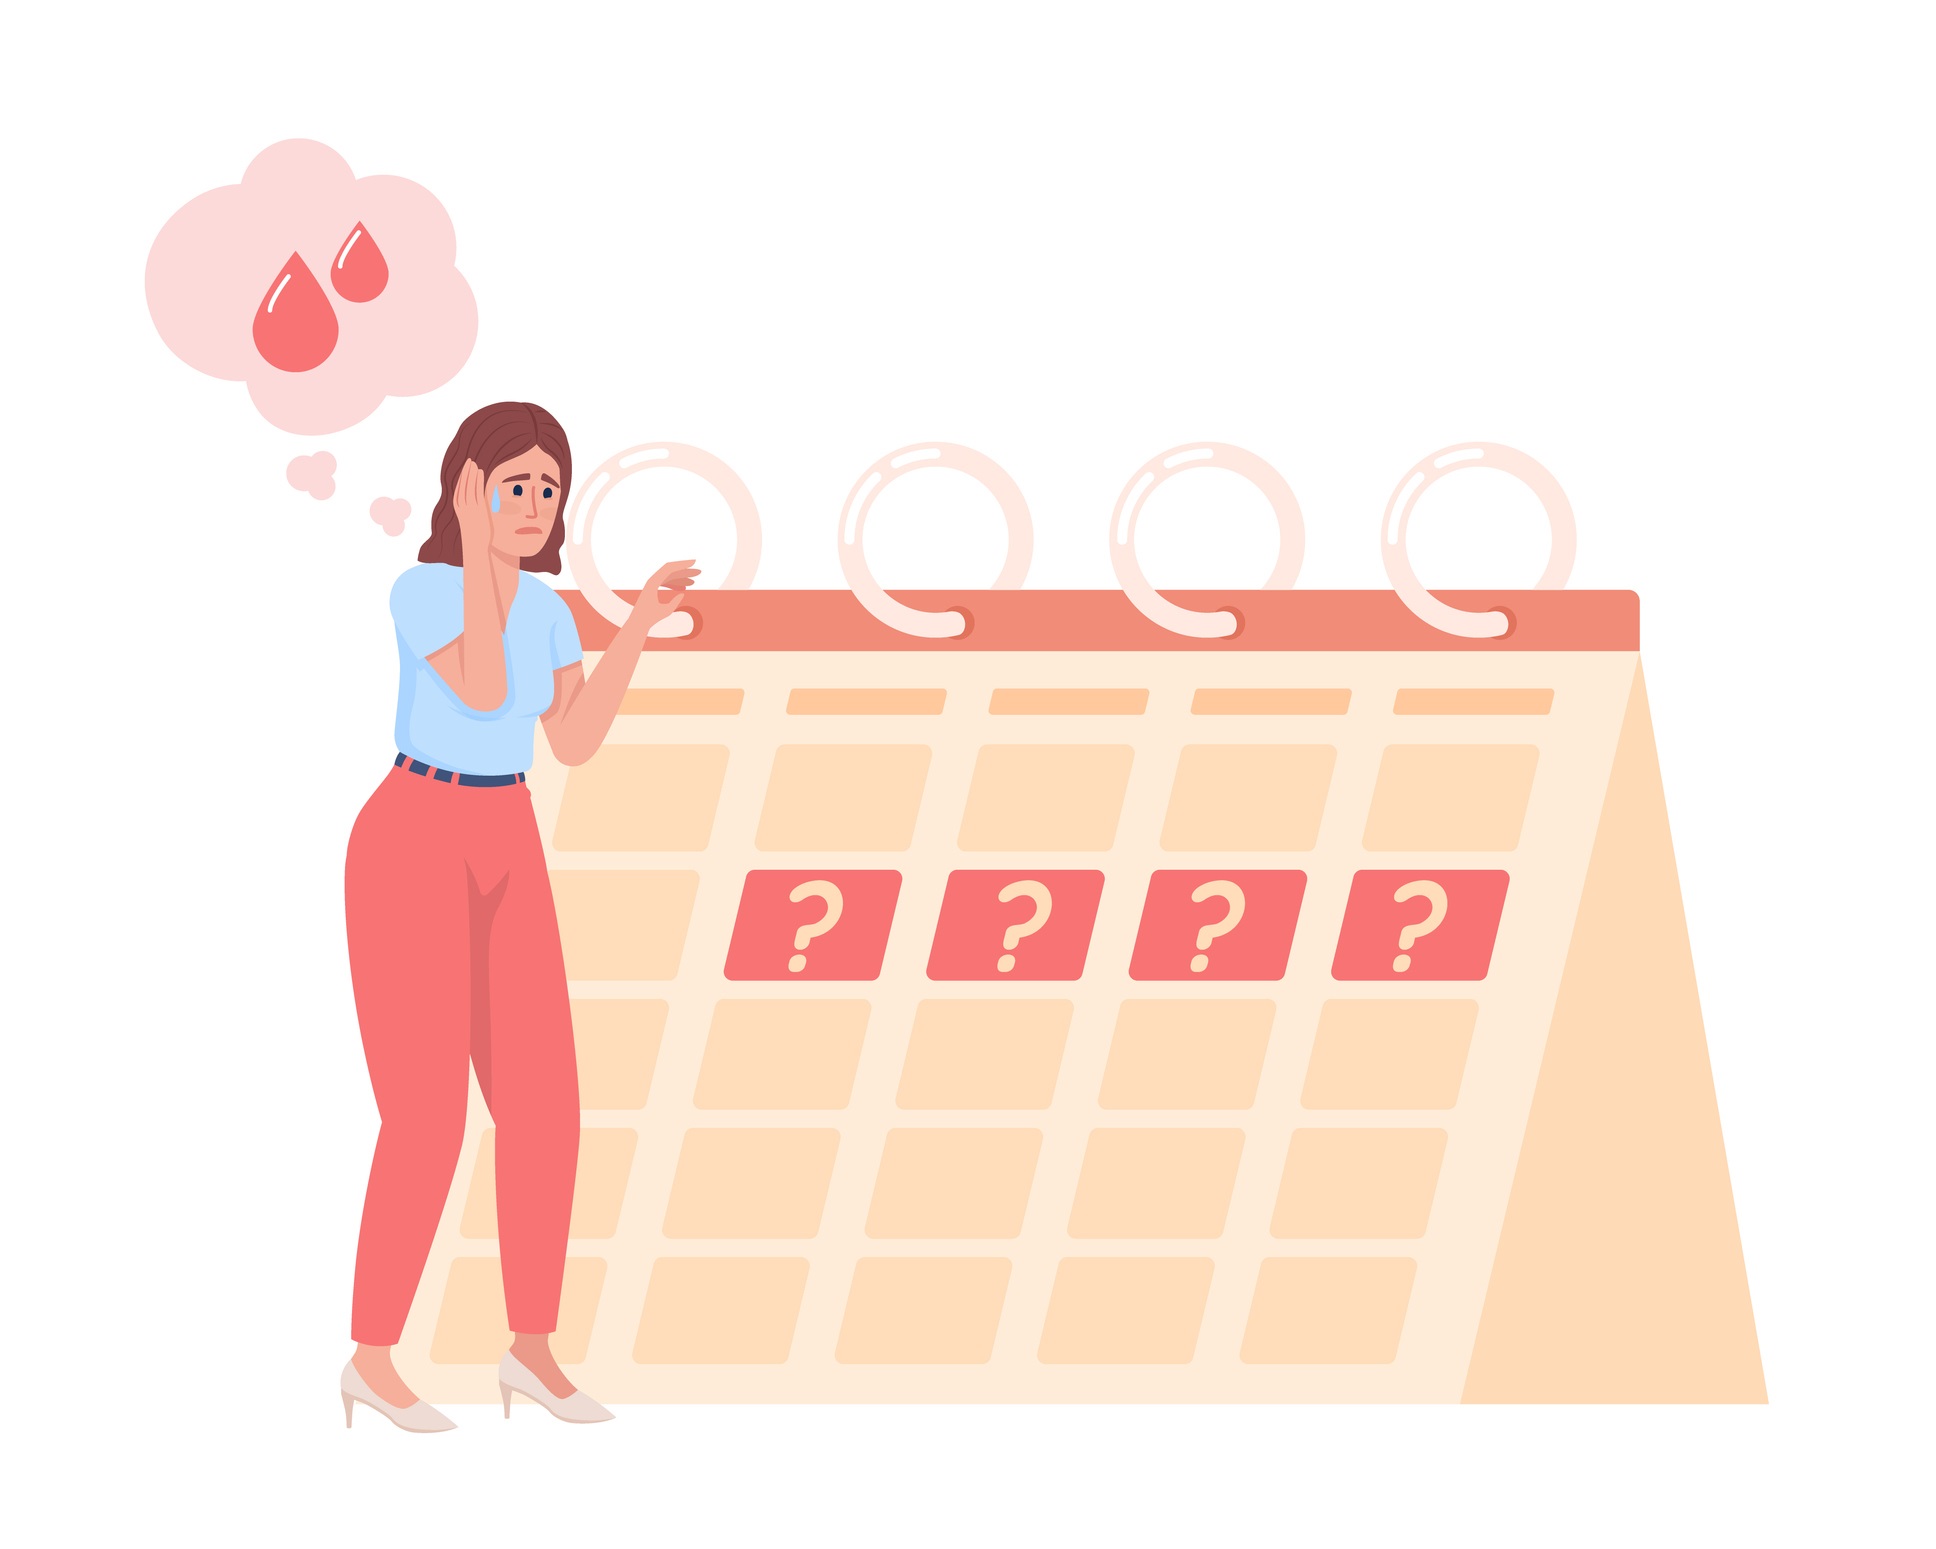 Grupo Ceverj Histerolap - Fique calma! 😮‍💨 A menstruação atrasada nem  sempre é sinal de gravidez, pois outras situações como o estresse em  excesso, emoções muito fortes, alterações hormonais ou mesmo o